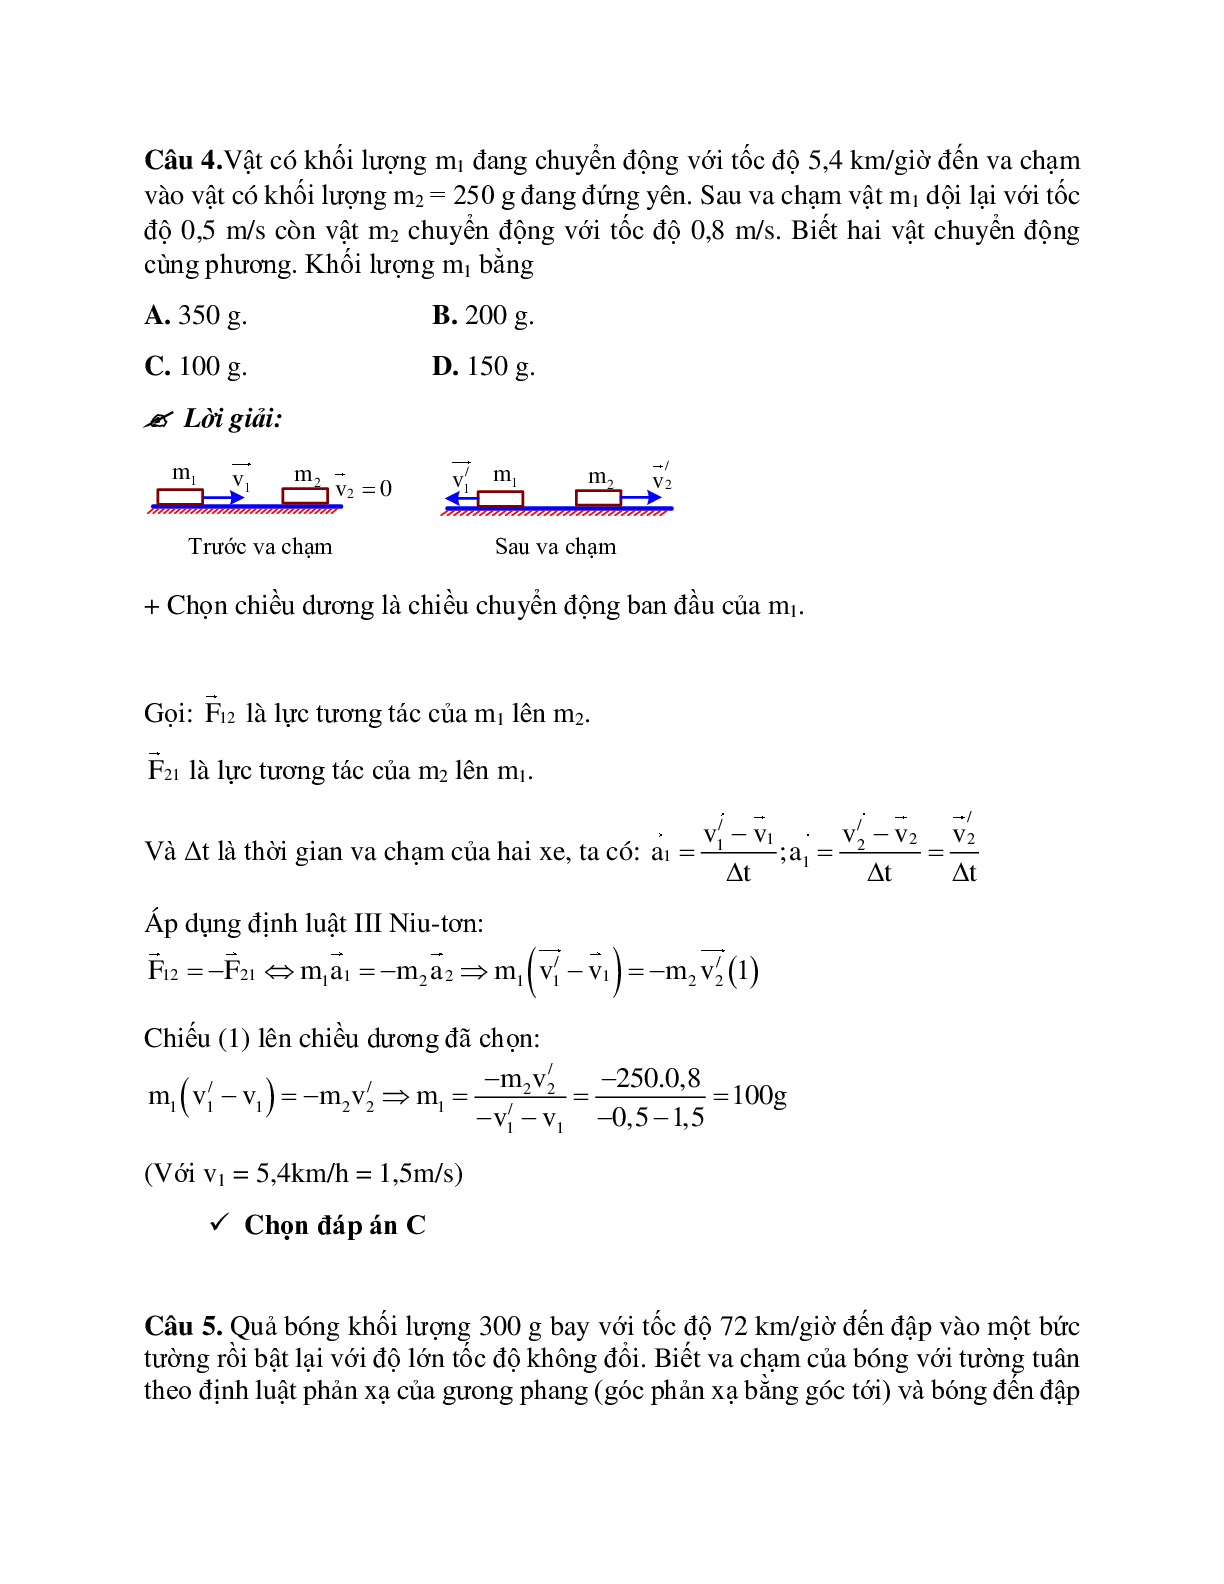 Phương pháp giải và bài tập về Bài toán hai vật va chạm nhau - định luật III Newton chọn lọc (trang 6)